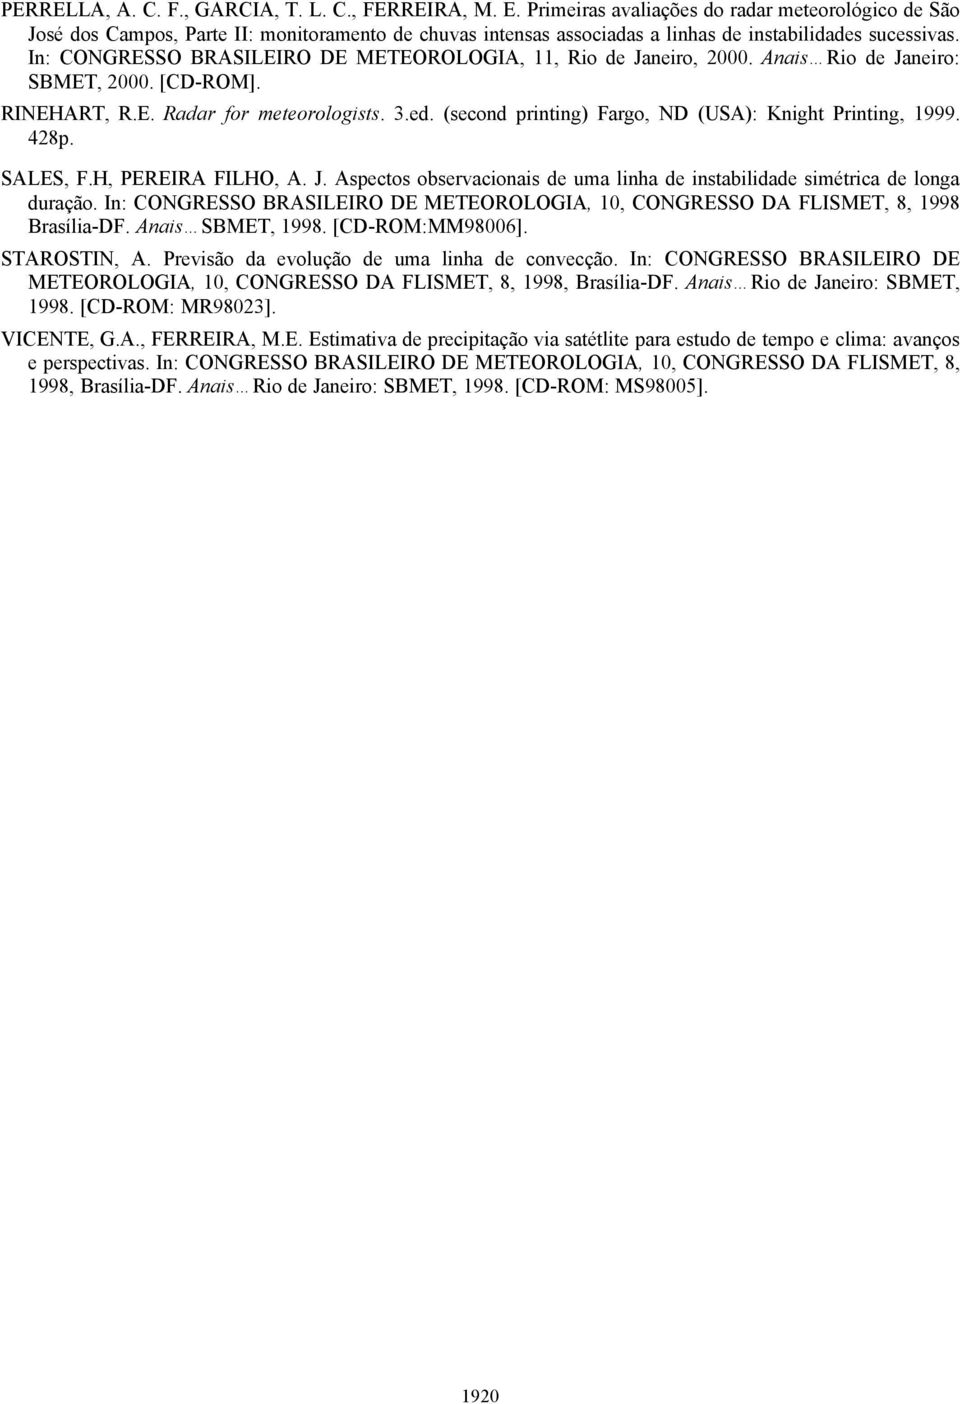 In: CONGRESSO BRASILEIRO DE METEOROLOGIA, 11, Rio de Janeiro, 2000. Anais Rio de Janeiro: SBMET, 2000. [CD-ROM]. RINEHART, R.E. Radar for meteorologists. 3.ed.